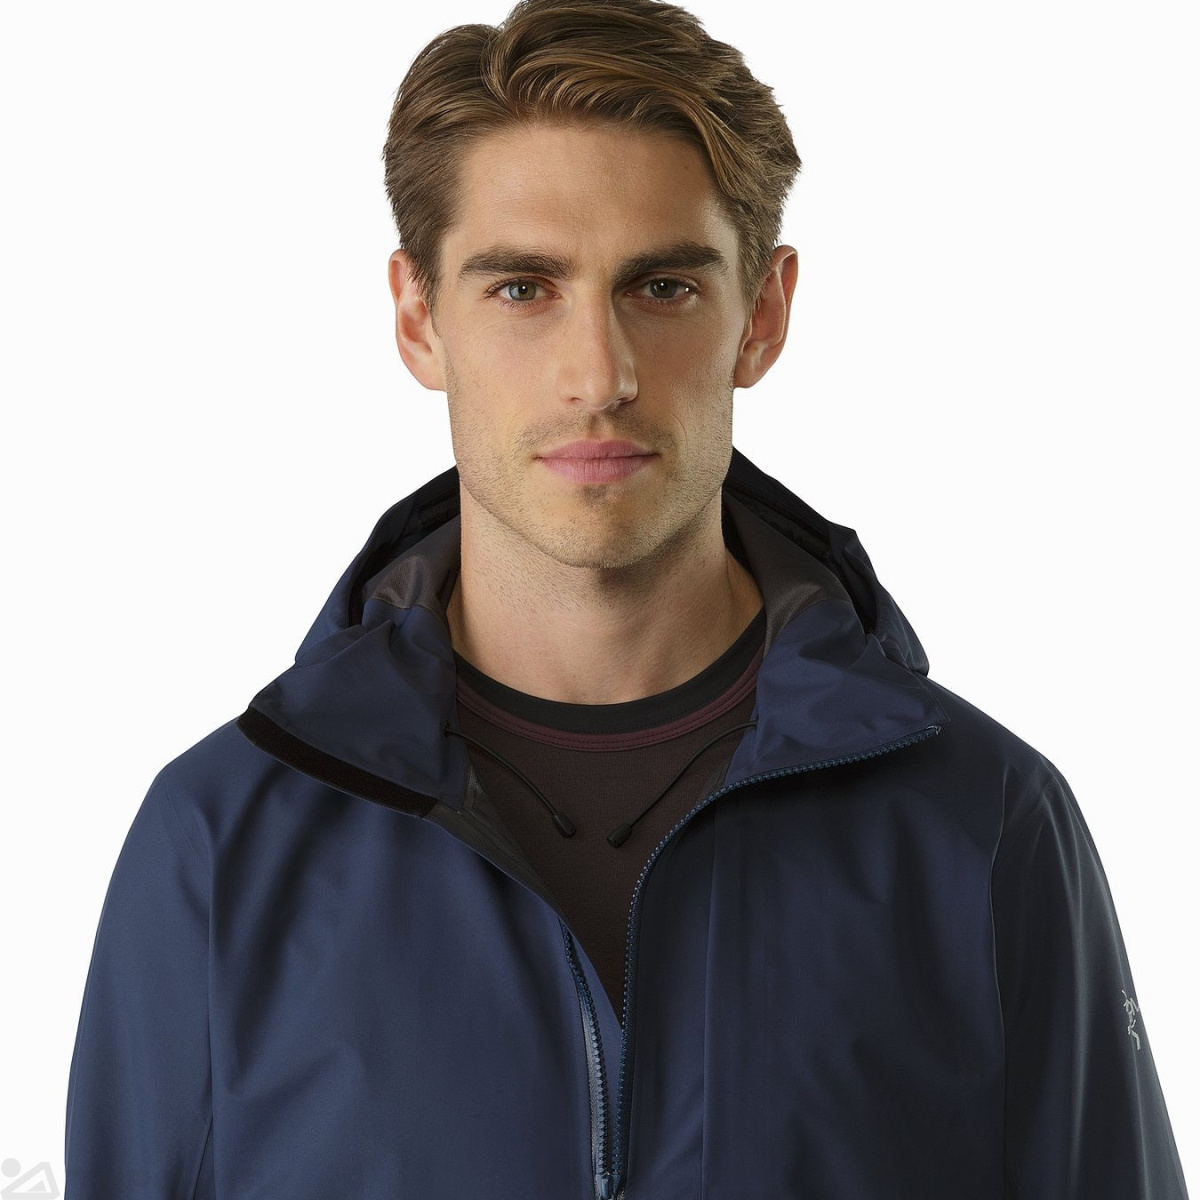 Куртка: Arcteryx Sawyer Coat Men's